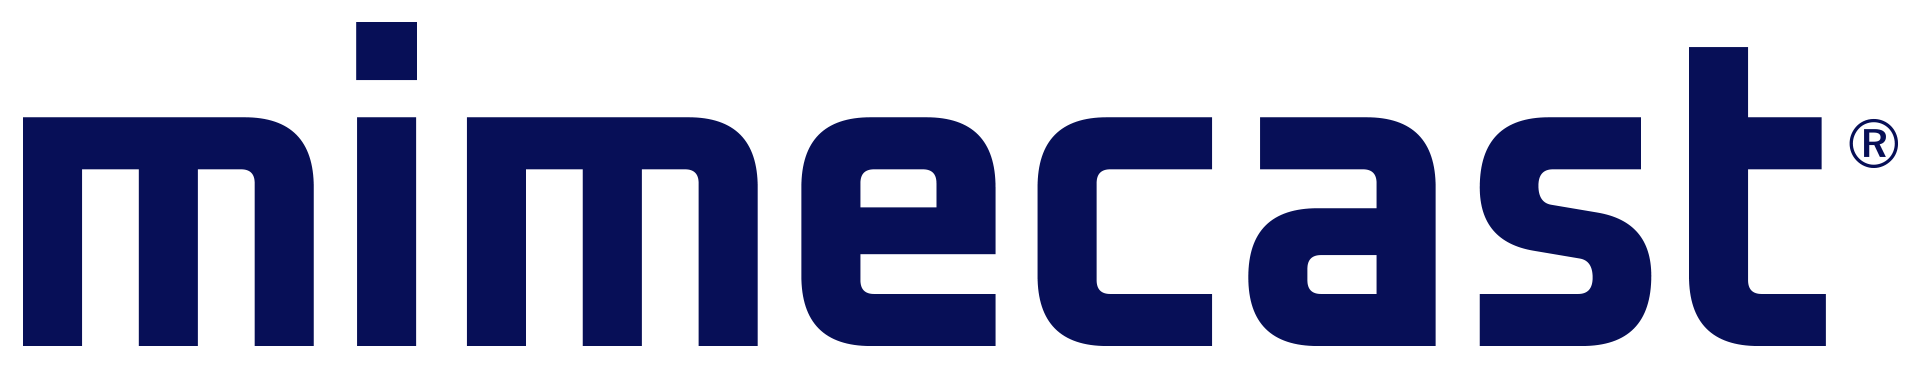 Mimecast Company Logo